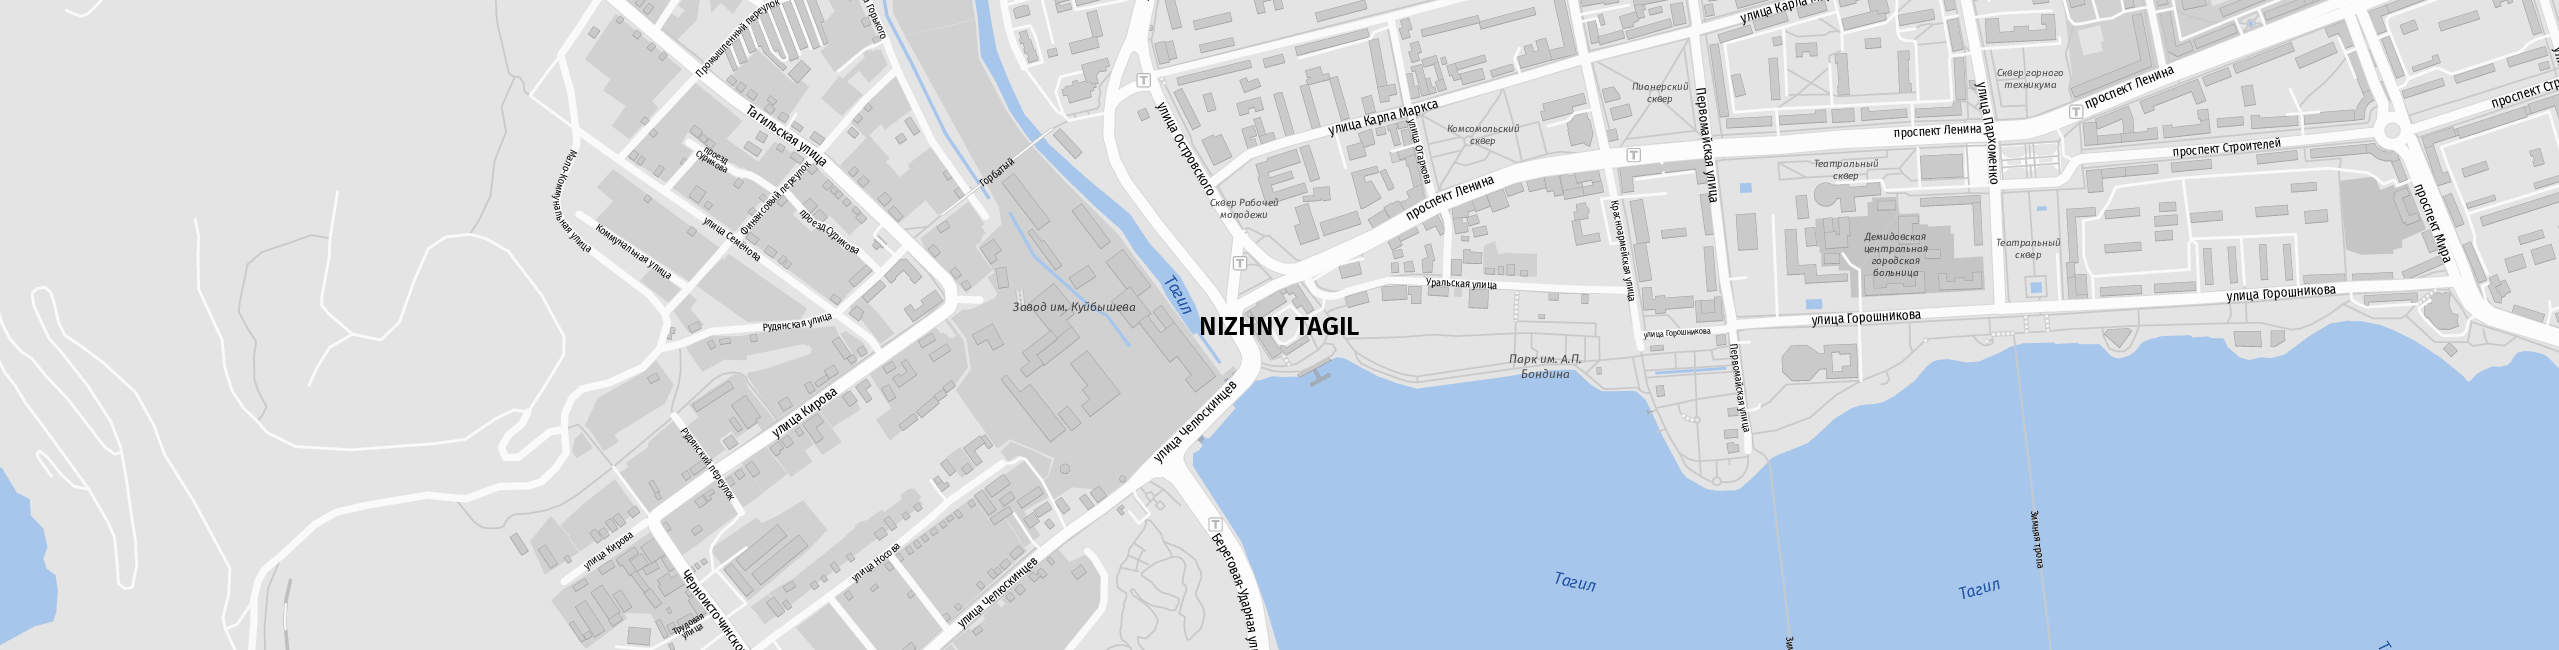 Stadtplan Nischni Tagil zum Downloaden.